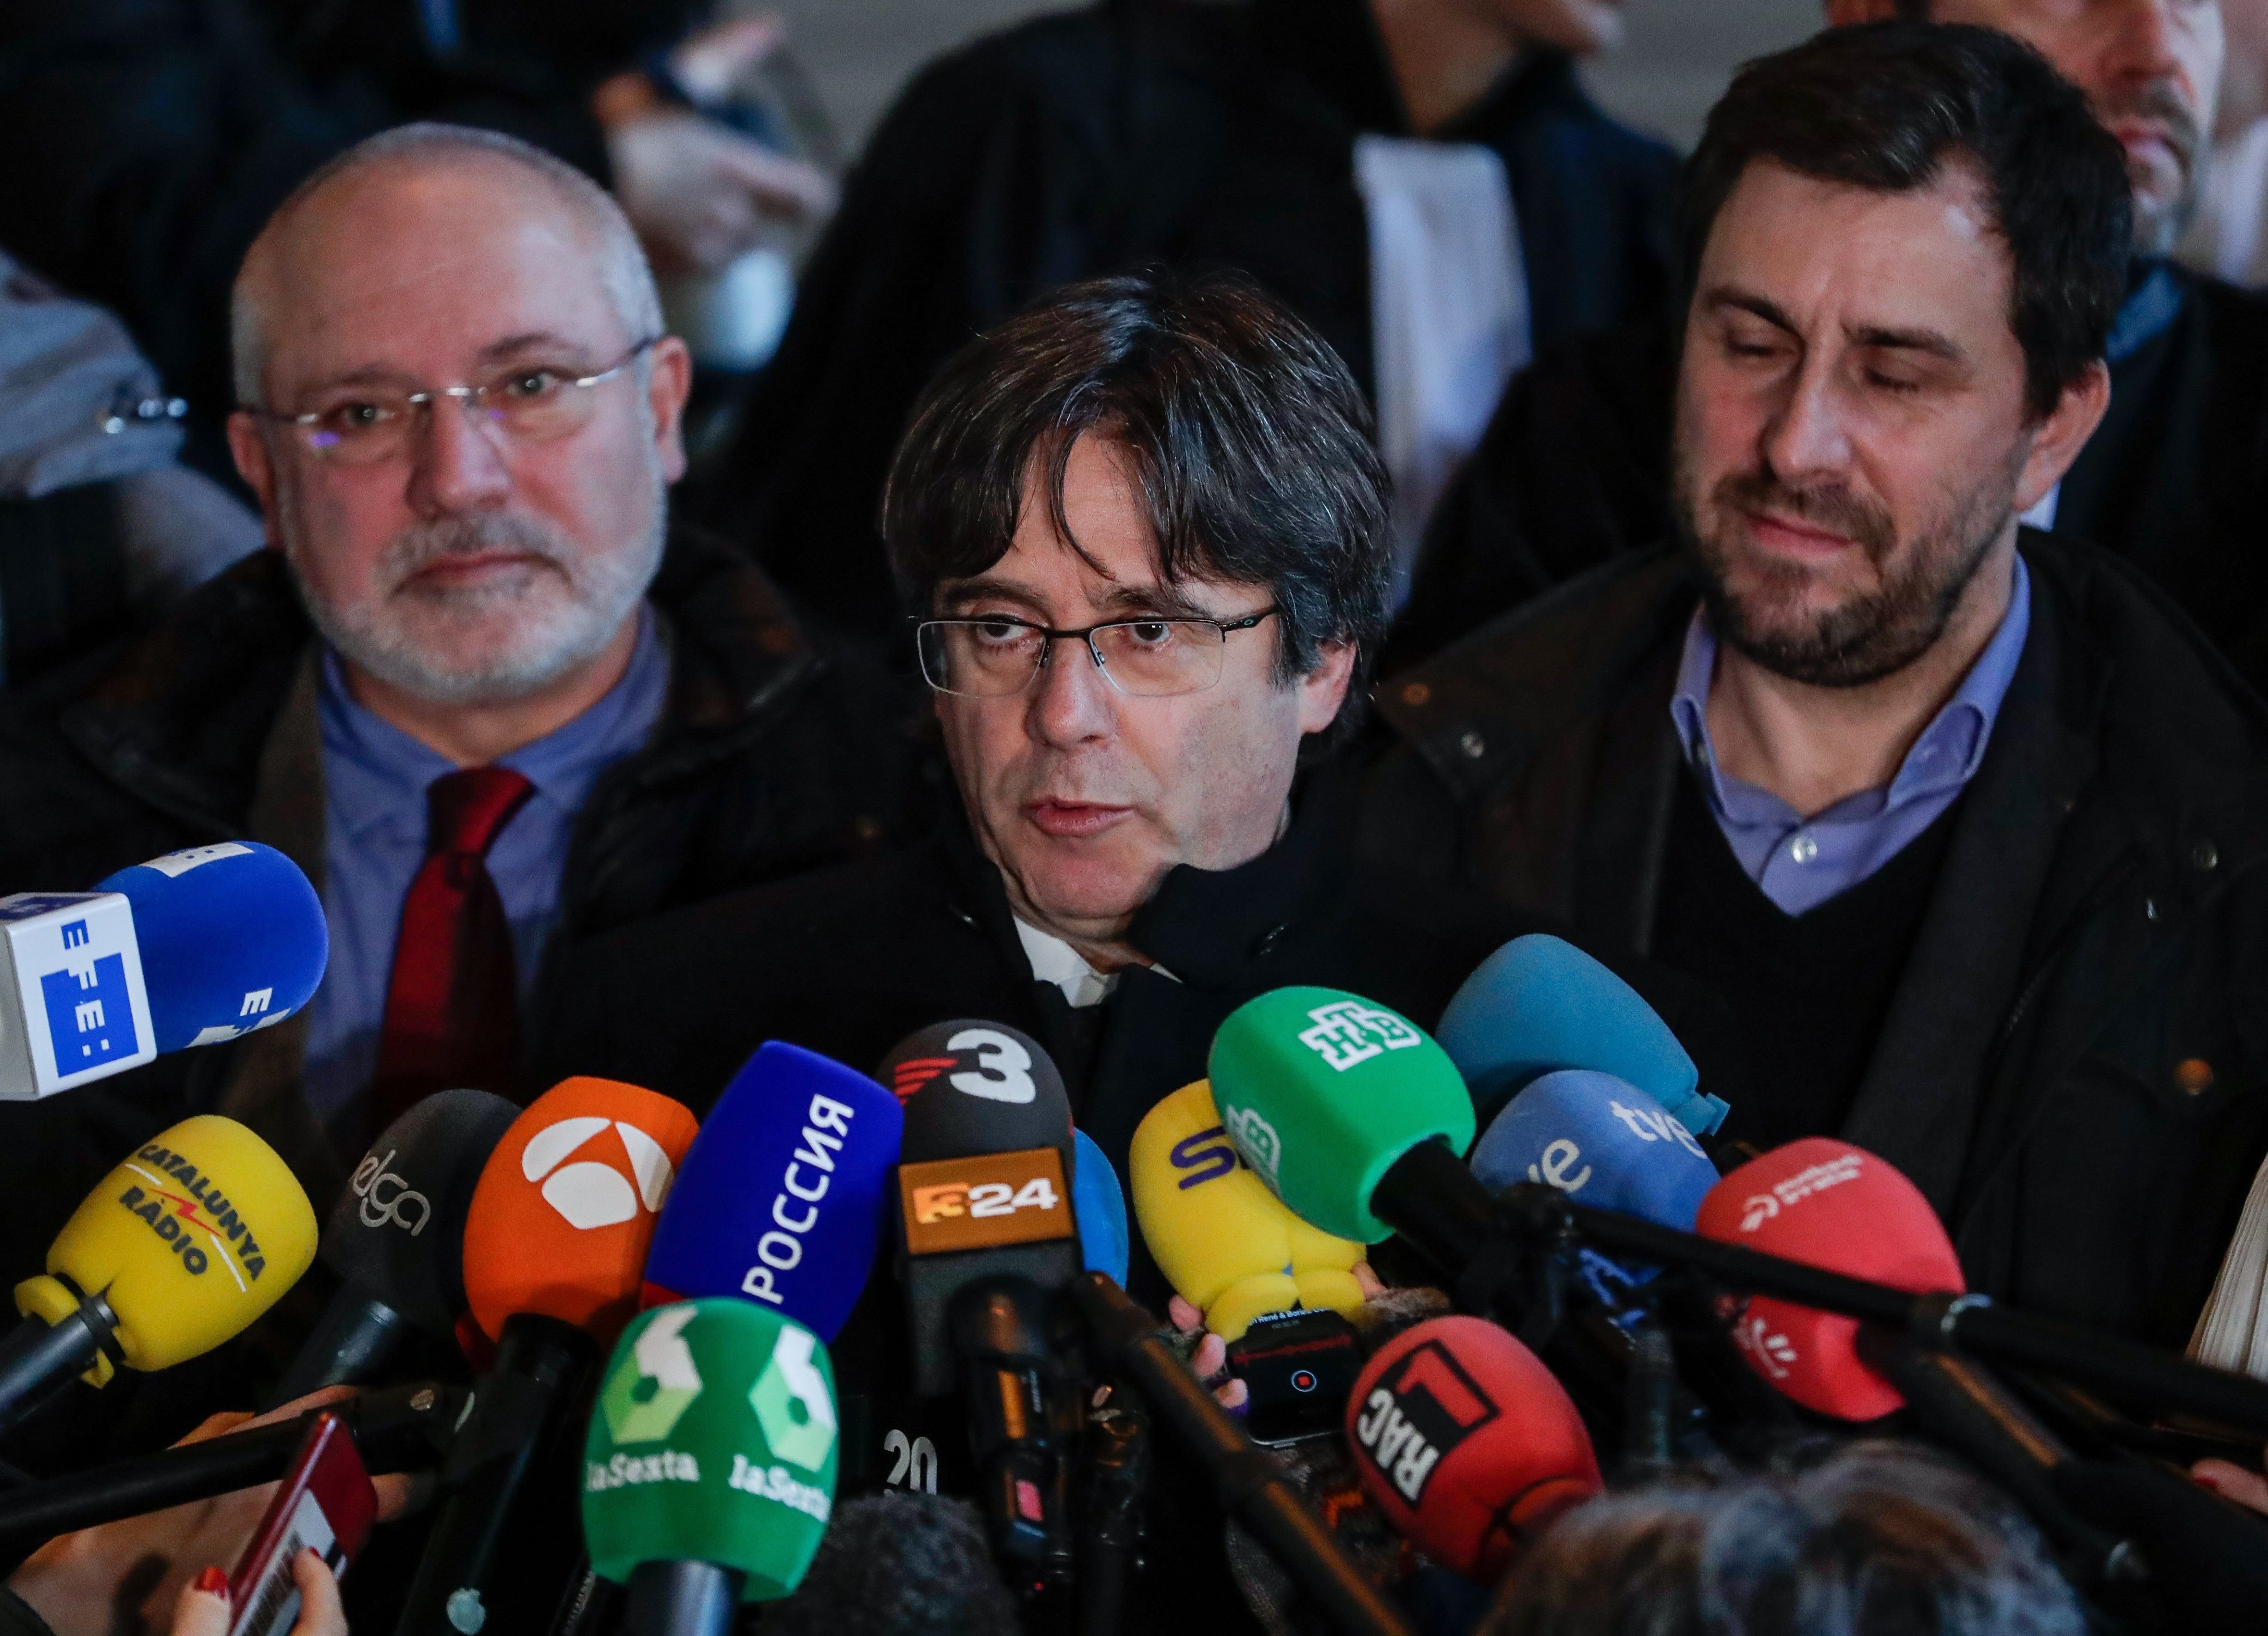 El paperot de la premsa espanyola en l’afer Zozulia, segons Puigdemont